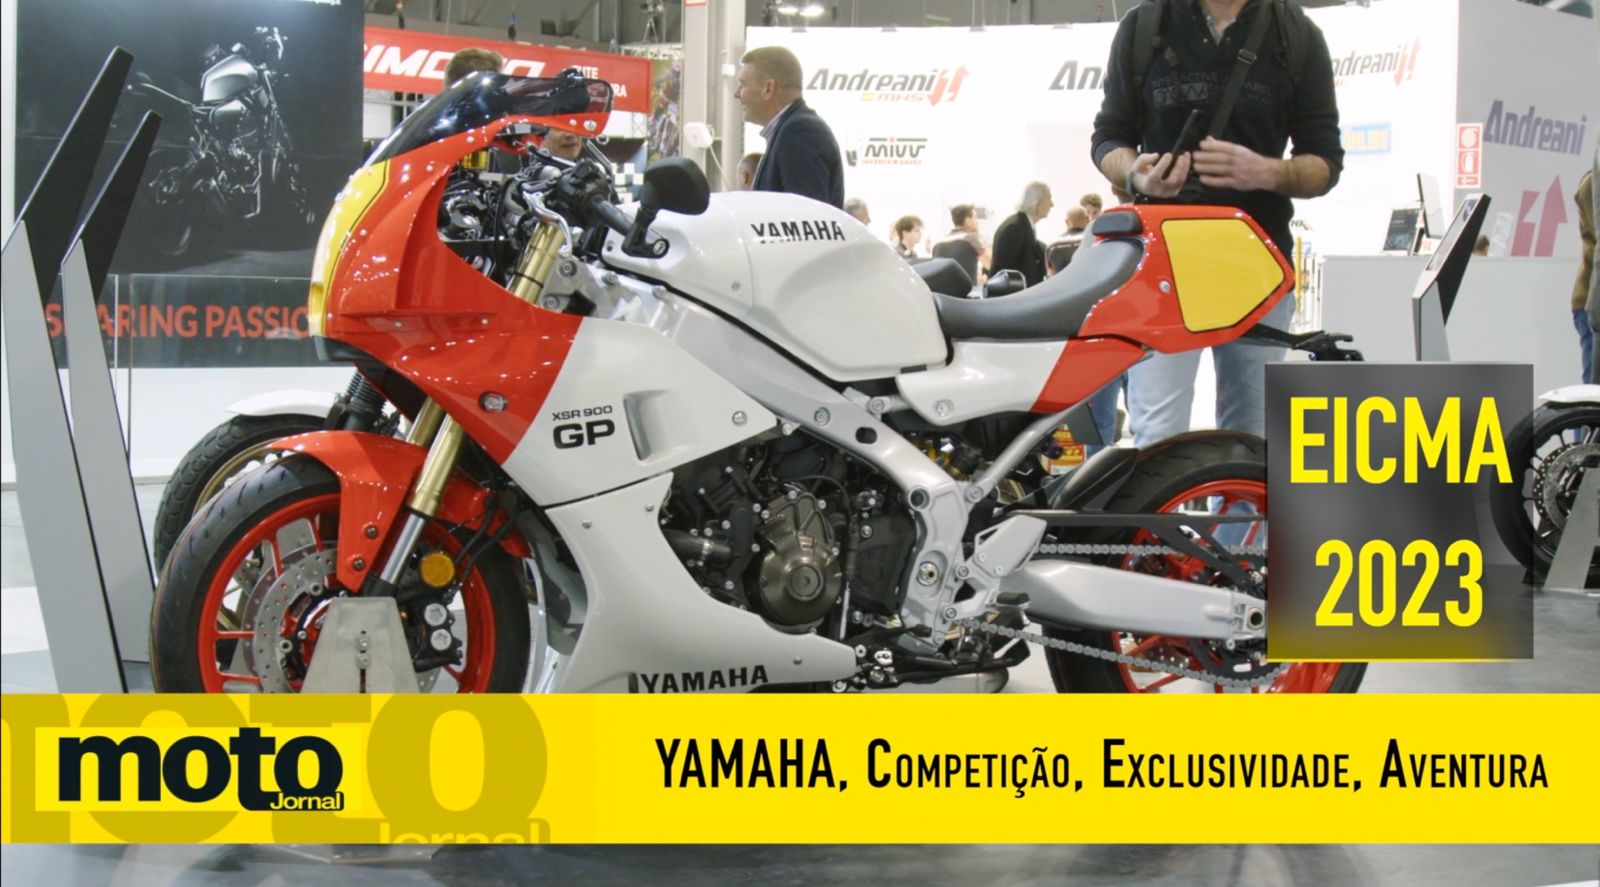 Yamaha YSR 900 Retro em Milão 2023